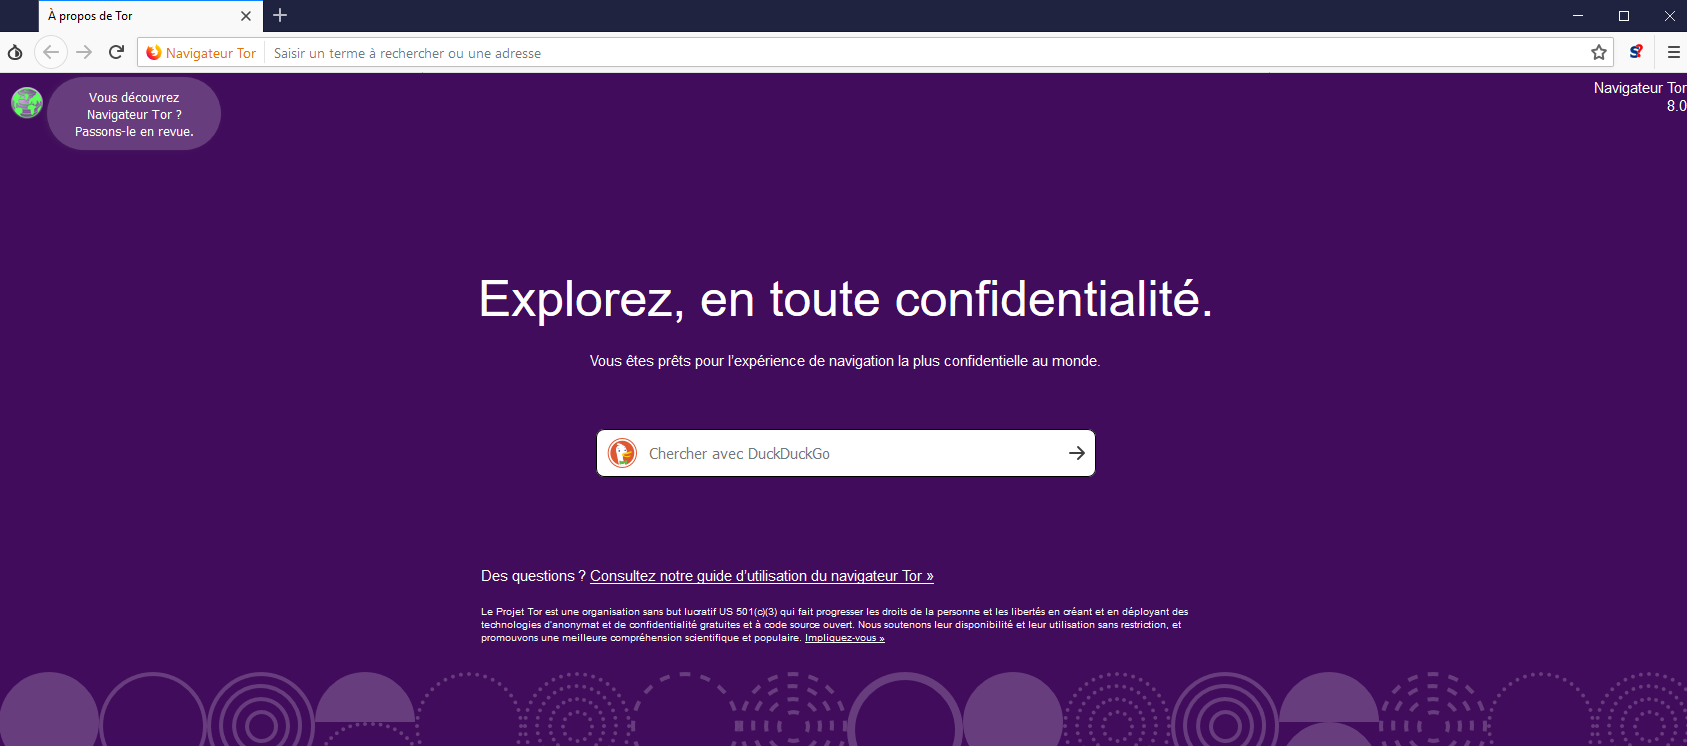 Tor browser videos mega вход браузер тор впн mega